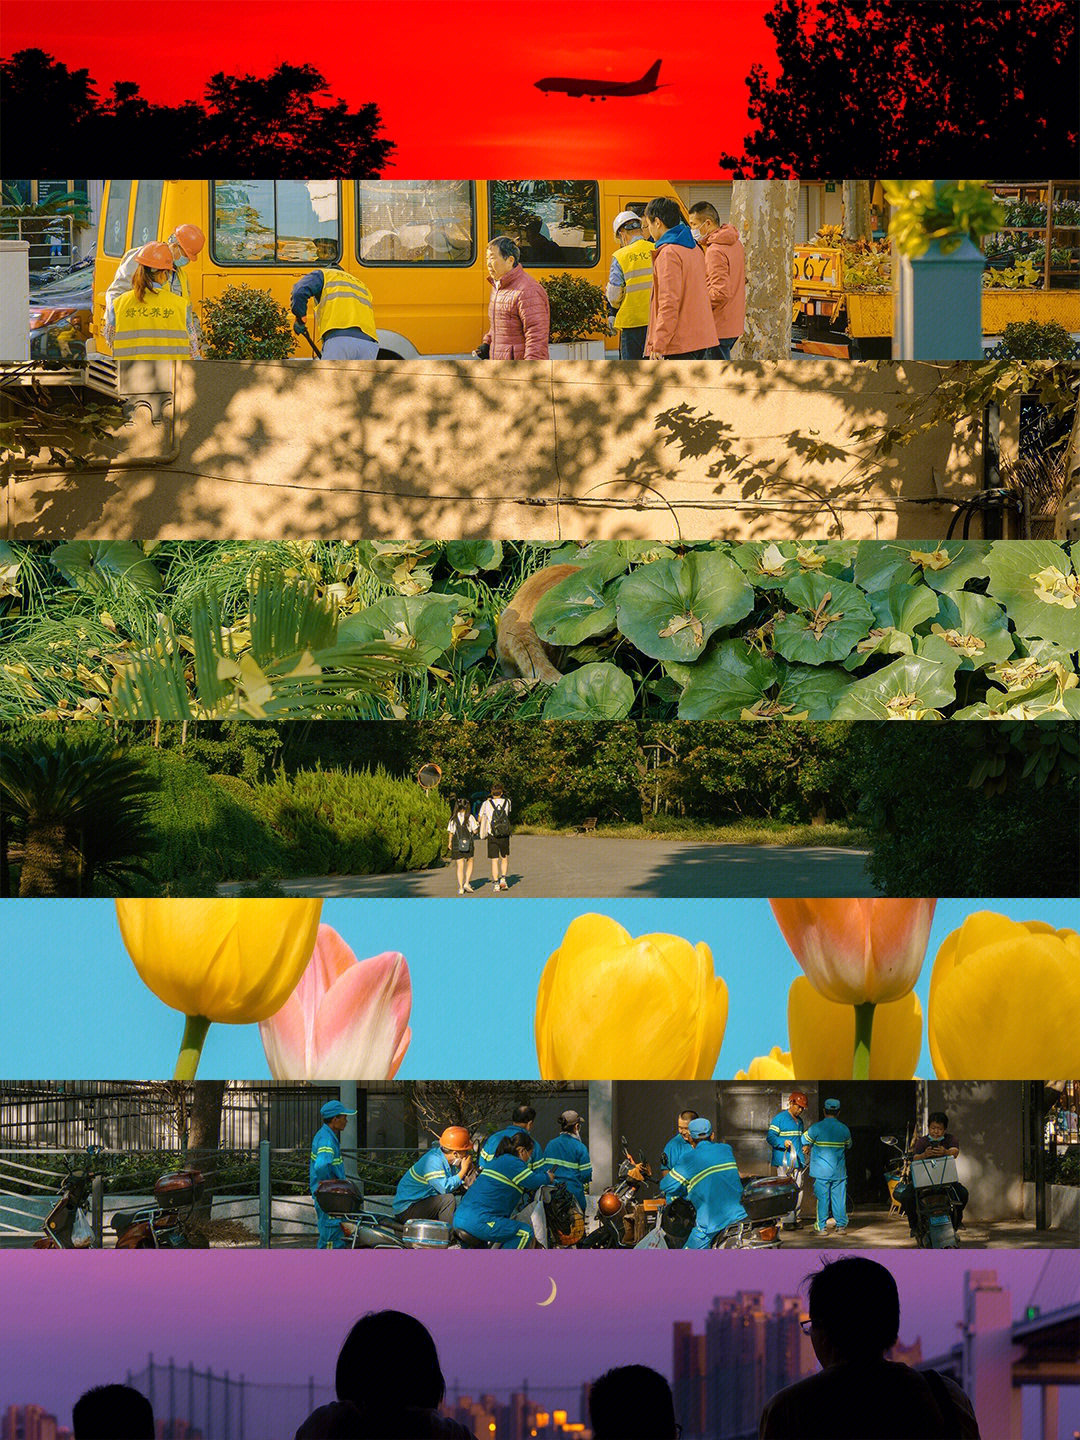 梧桐绿,银杏黄,夏日蓝,络绎不绝的路人,一起构成了上海四季的五颜六色